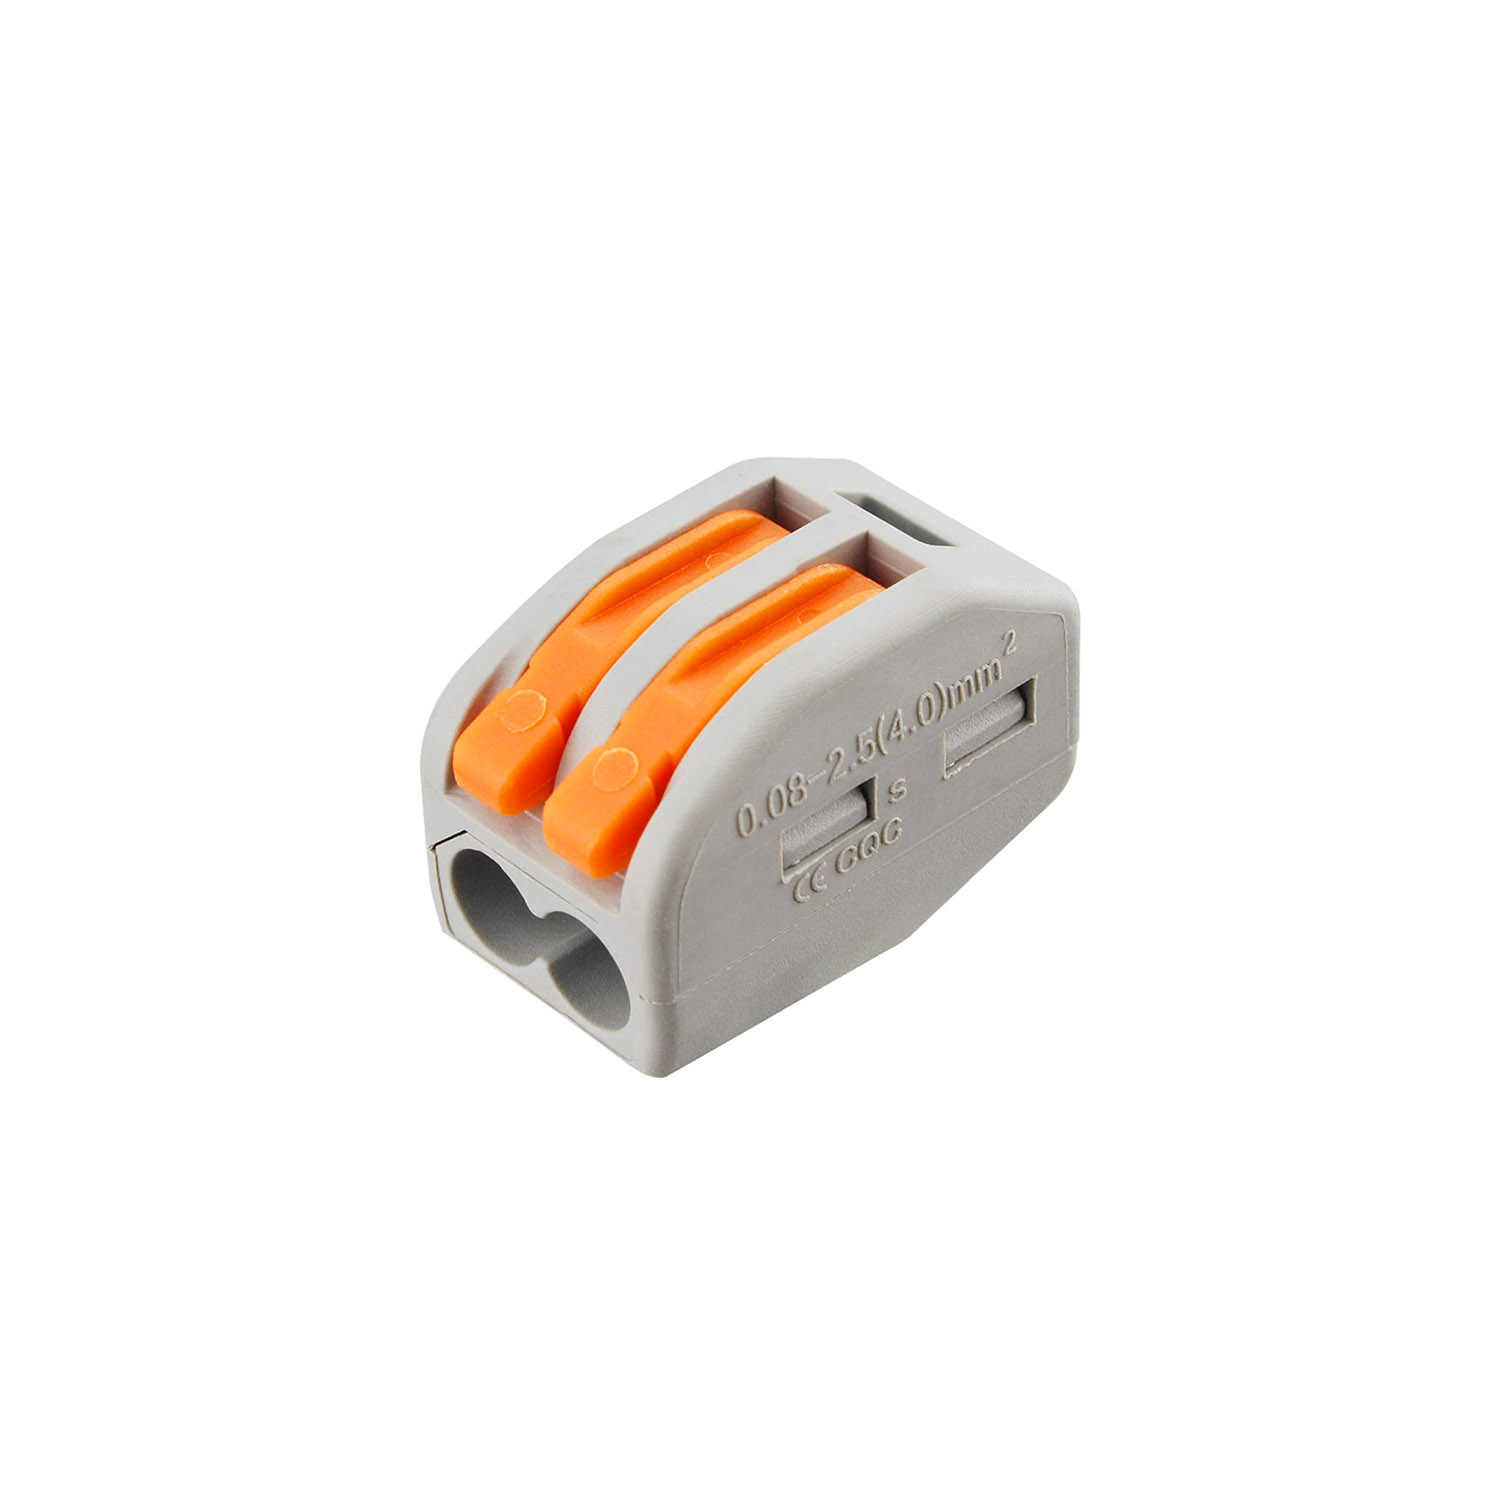 Conector rápido para cables 0,08-2,5mm2